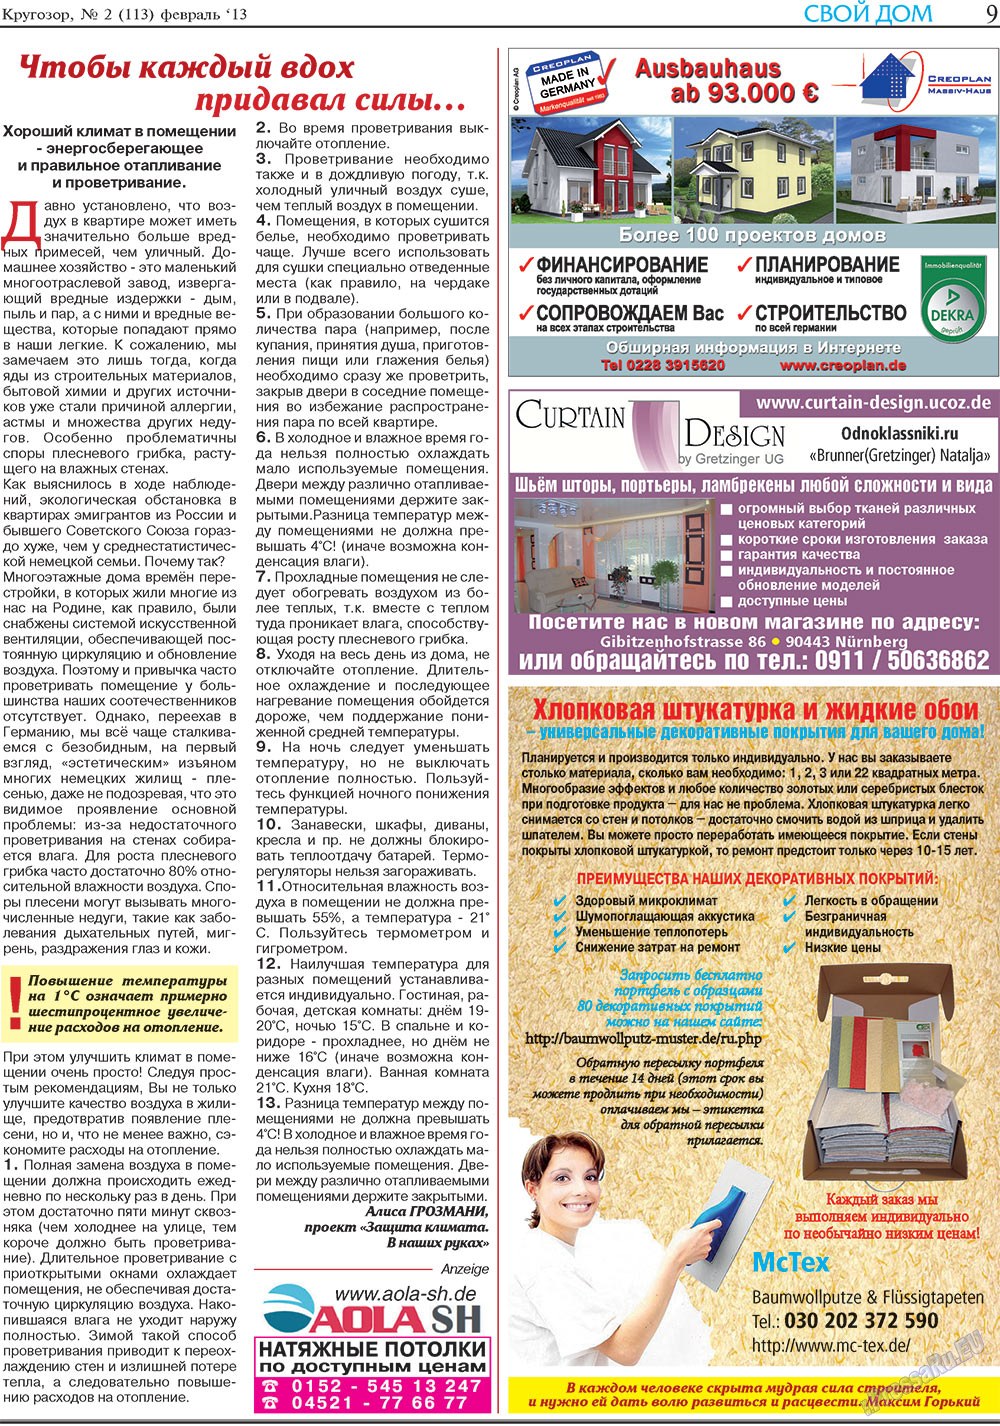 Кругозор, газета. 2013 №2 стр.9